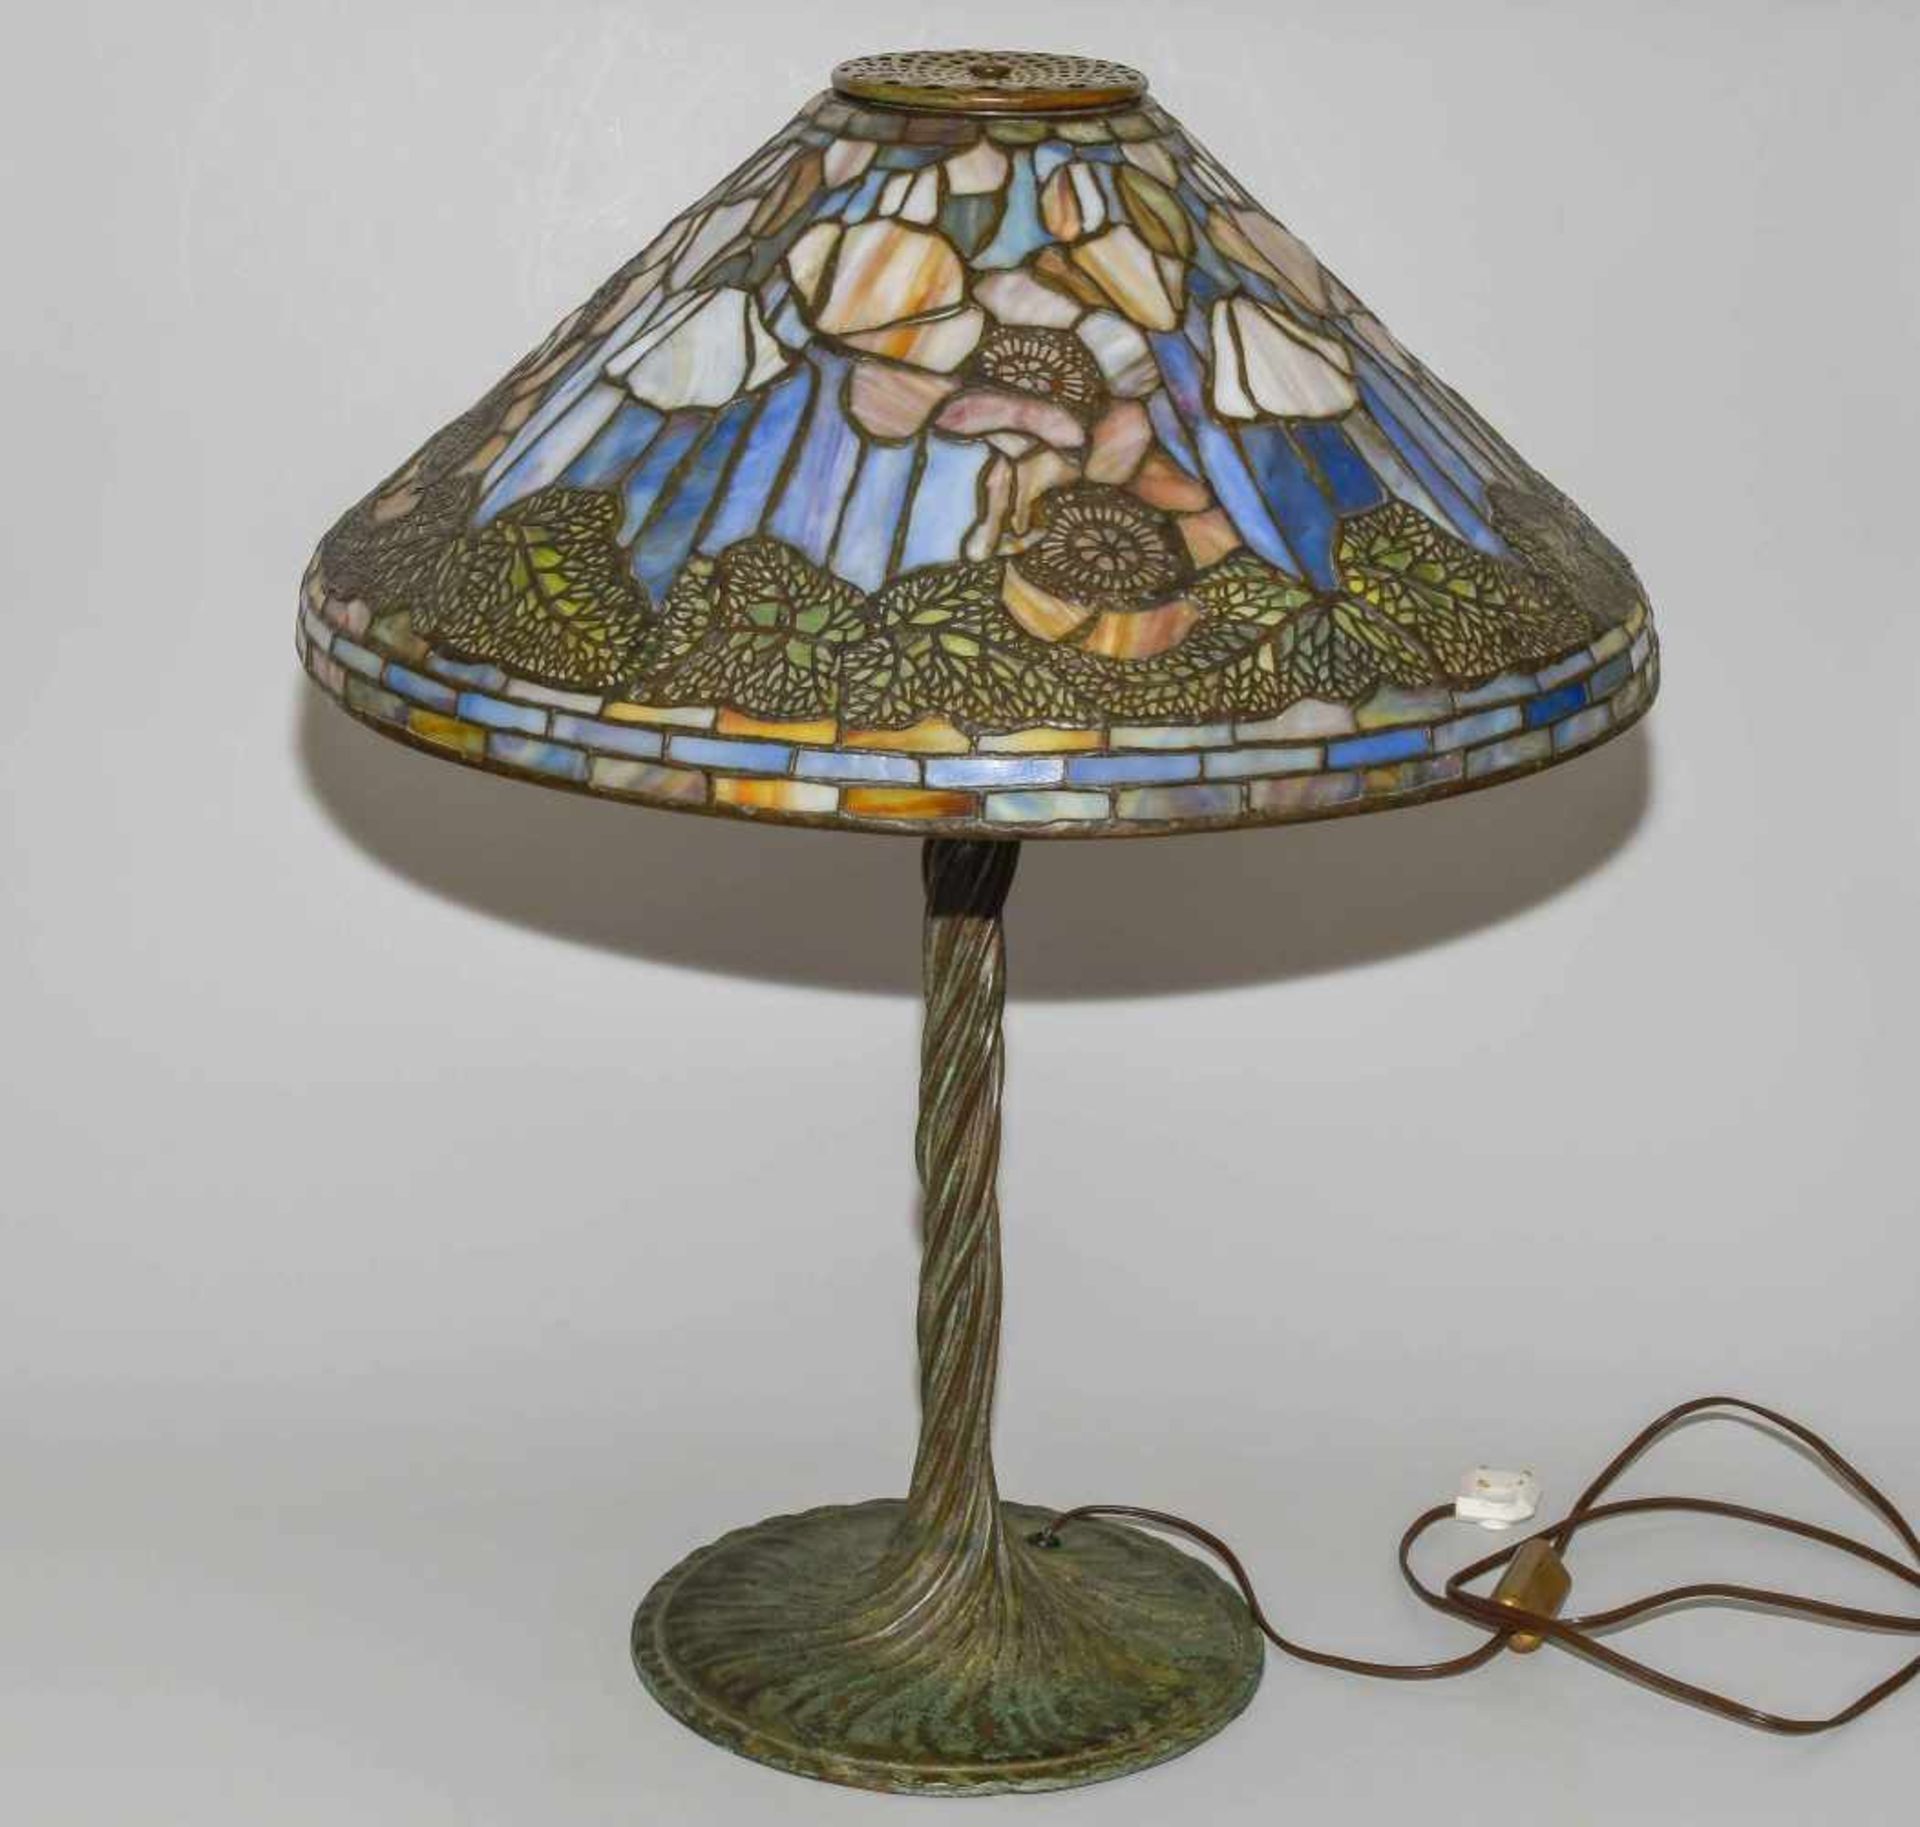 Tiffany Studios New YorkTischlampe "Poppy". Schirm aus "leaded Glass", weisser Mohn mit Blättern, - Image 2 of 24